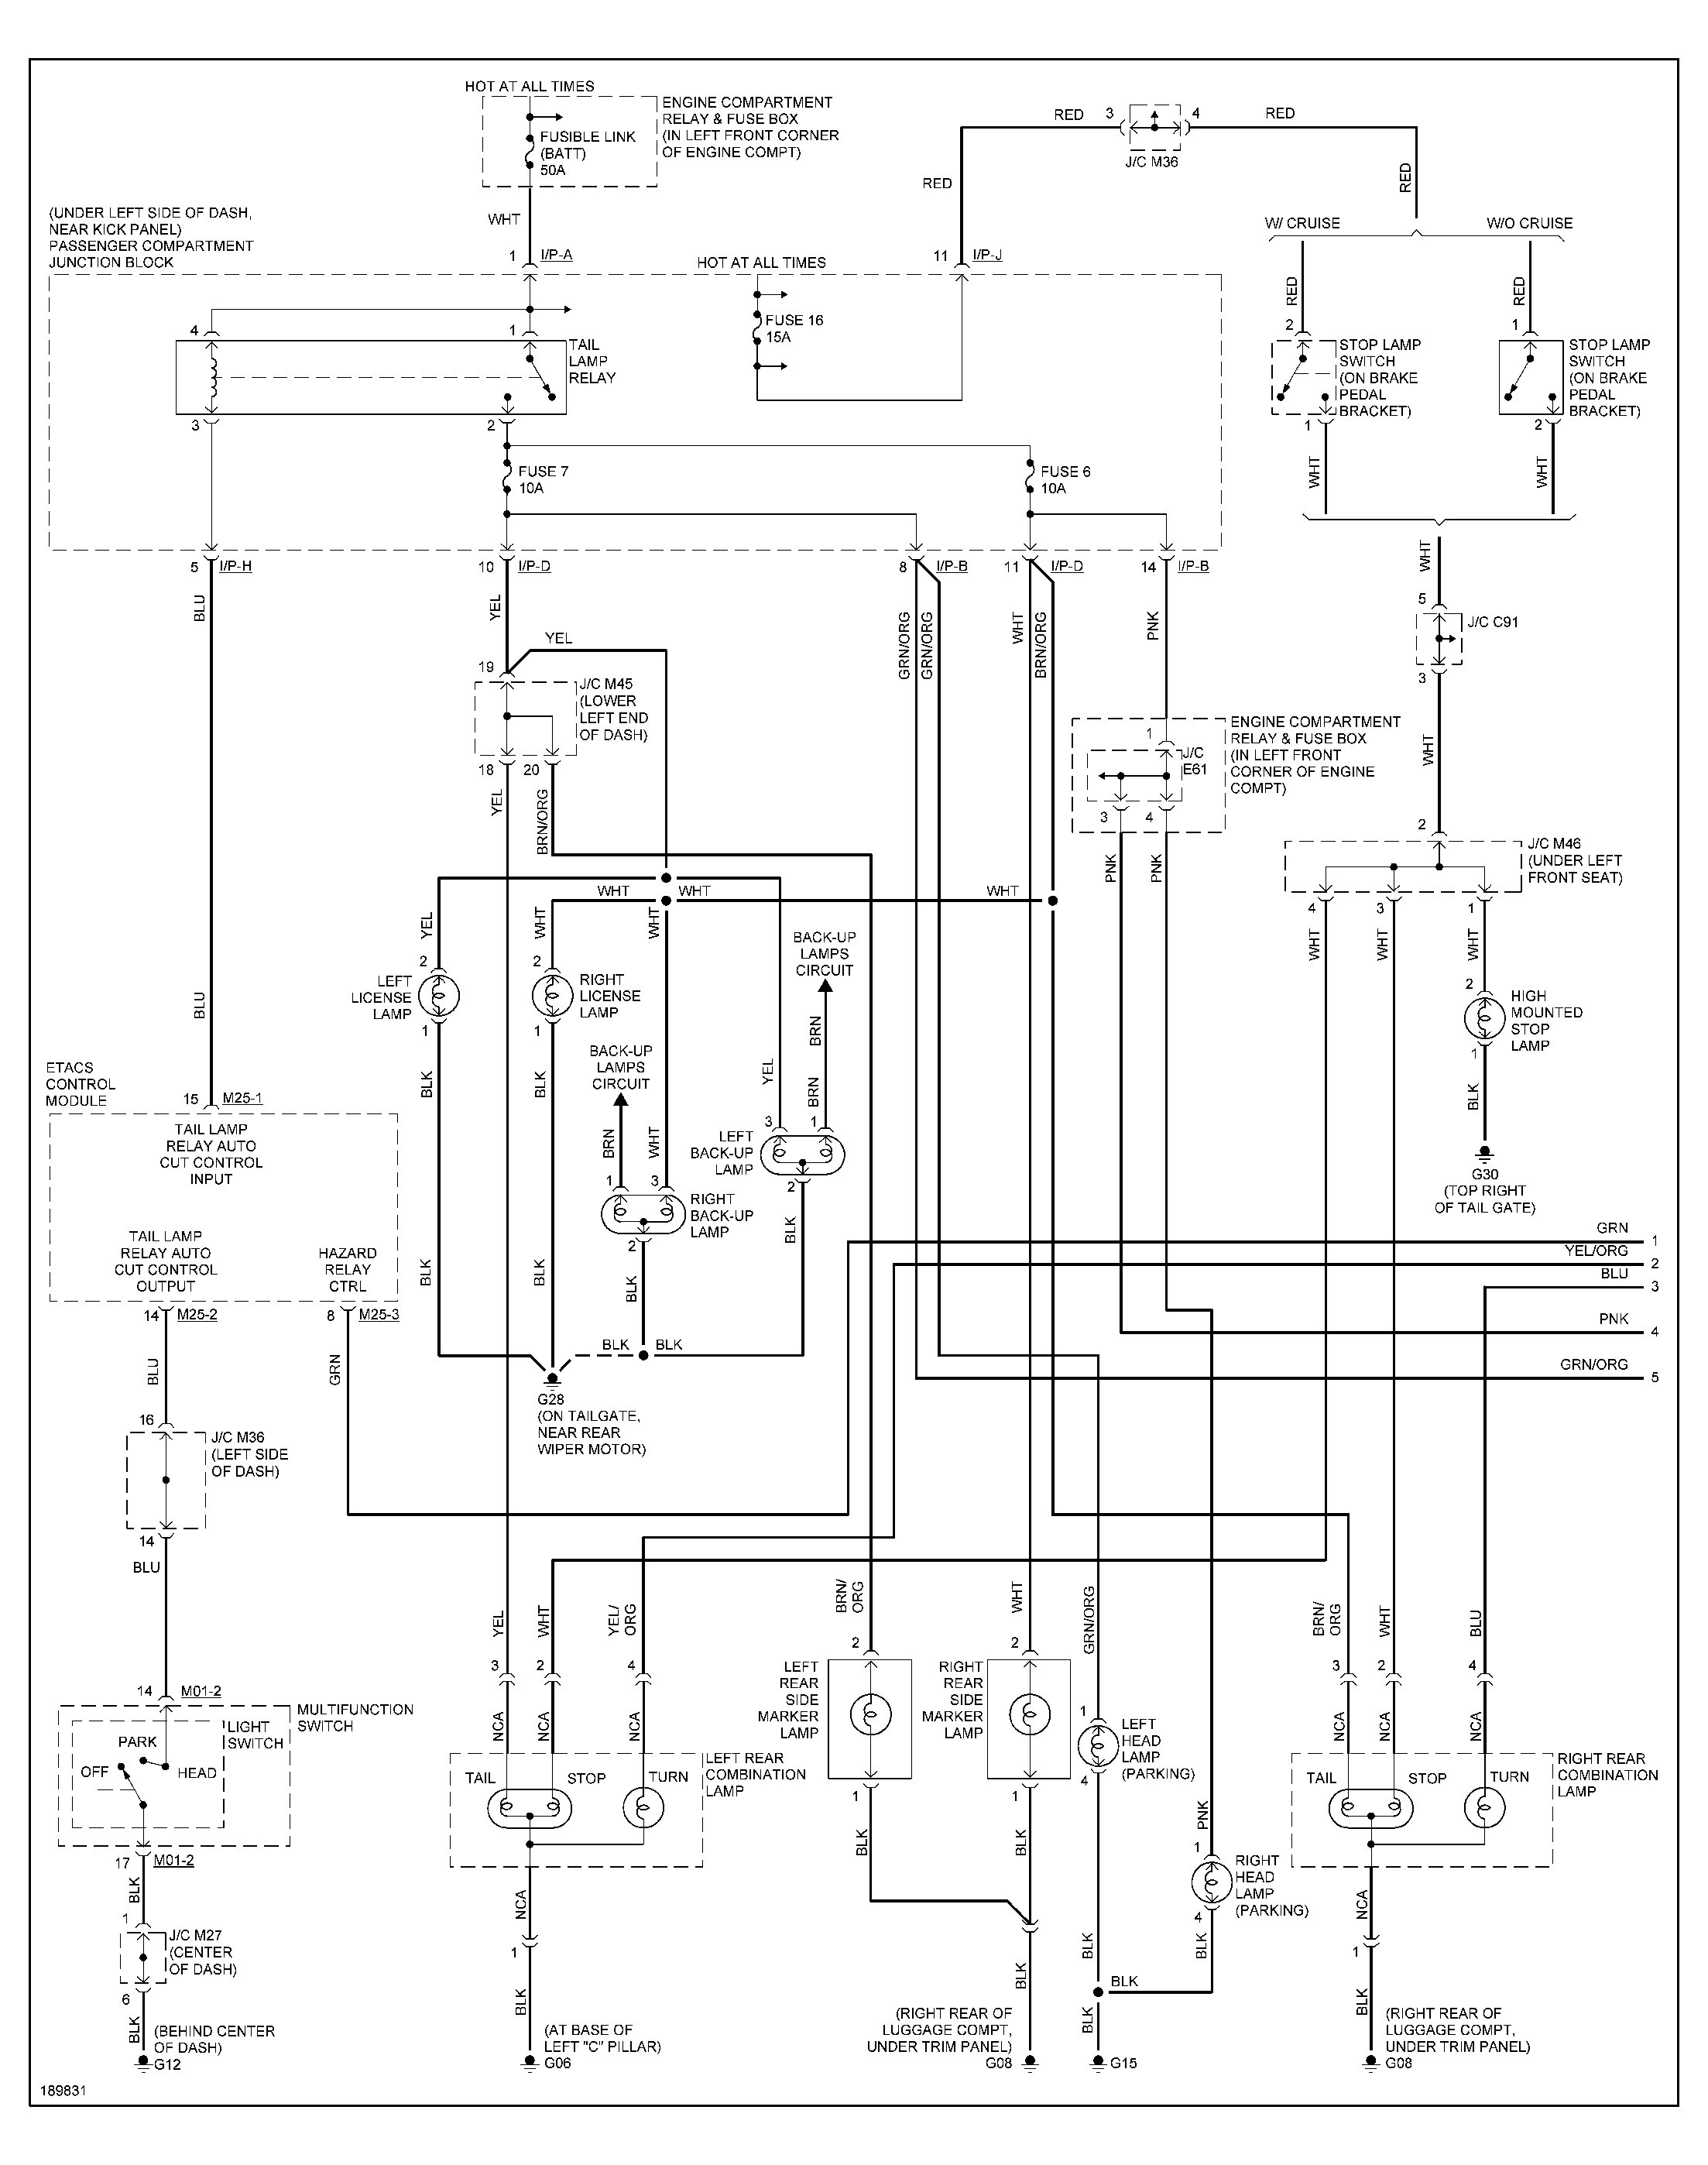 2003 Hyundai Elantra Radio Wiring Diagram from detoxicrecenze.com